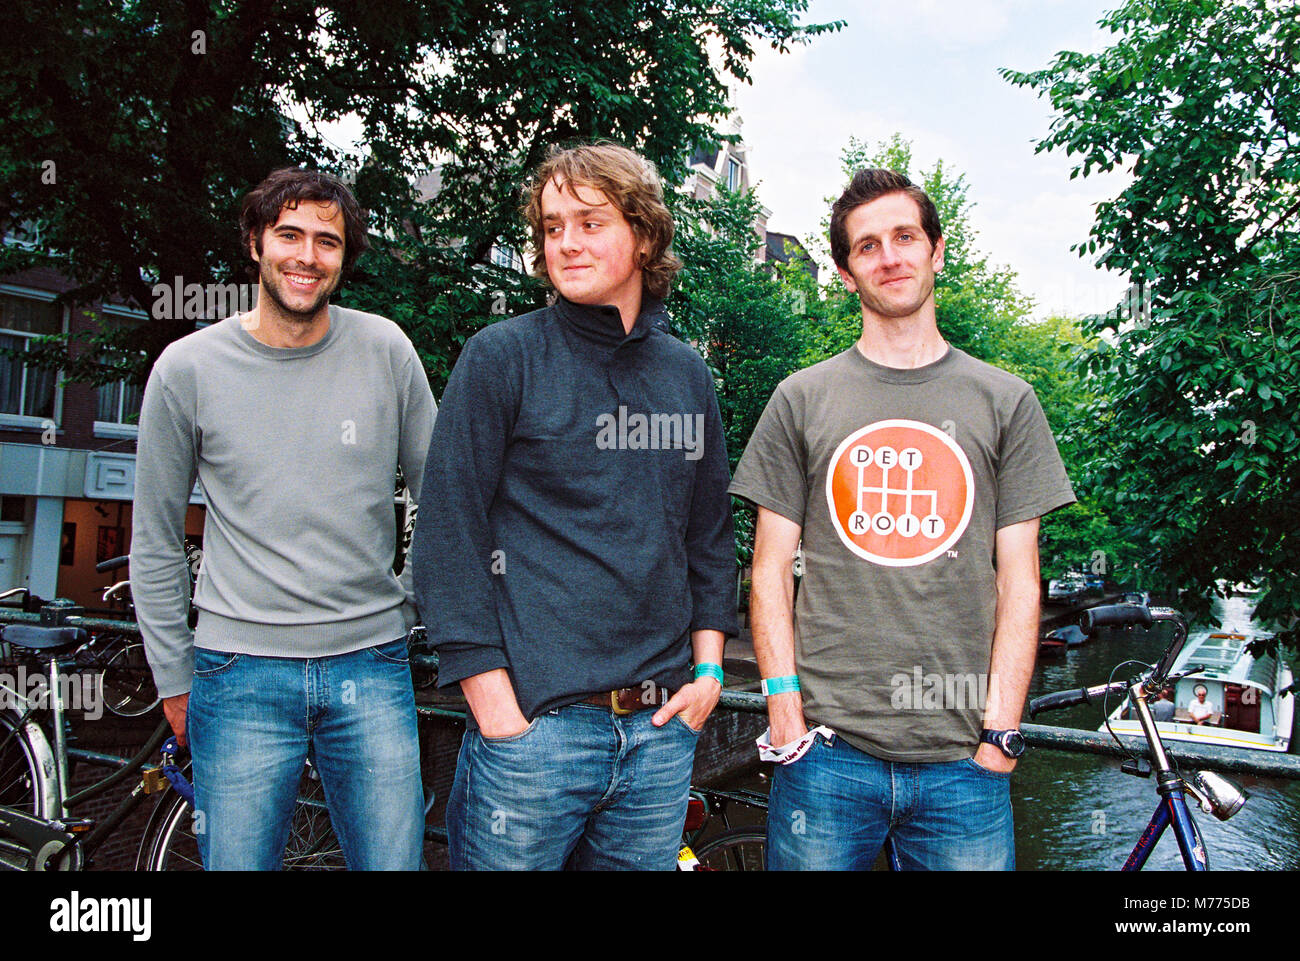 Groupe anglais Keane photographié à Amsterdam le 7 juillet 2004, Pays-Bas, Europe Banque D'Images